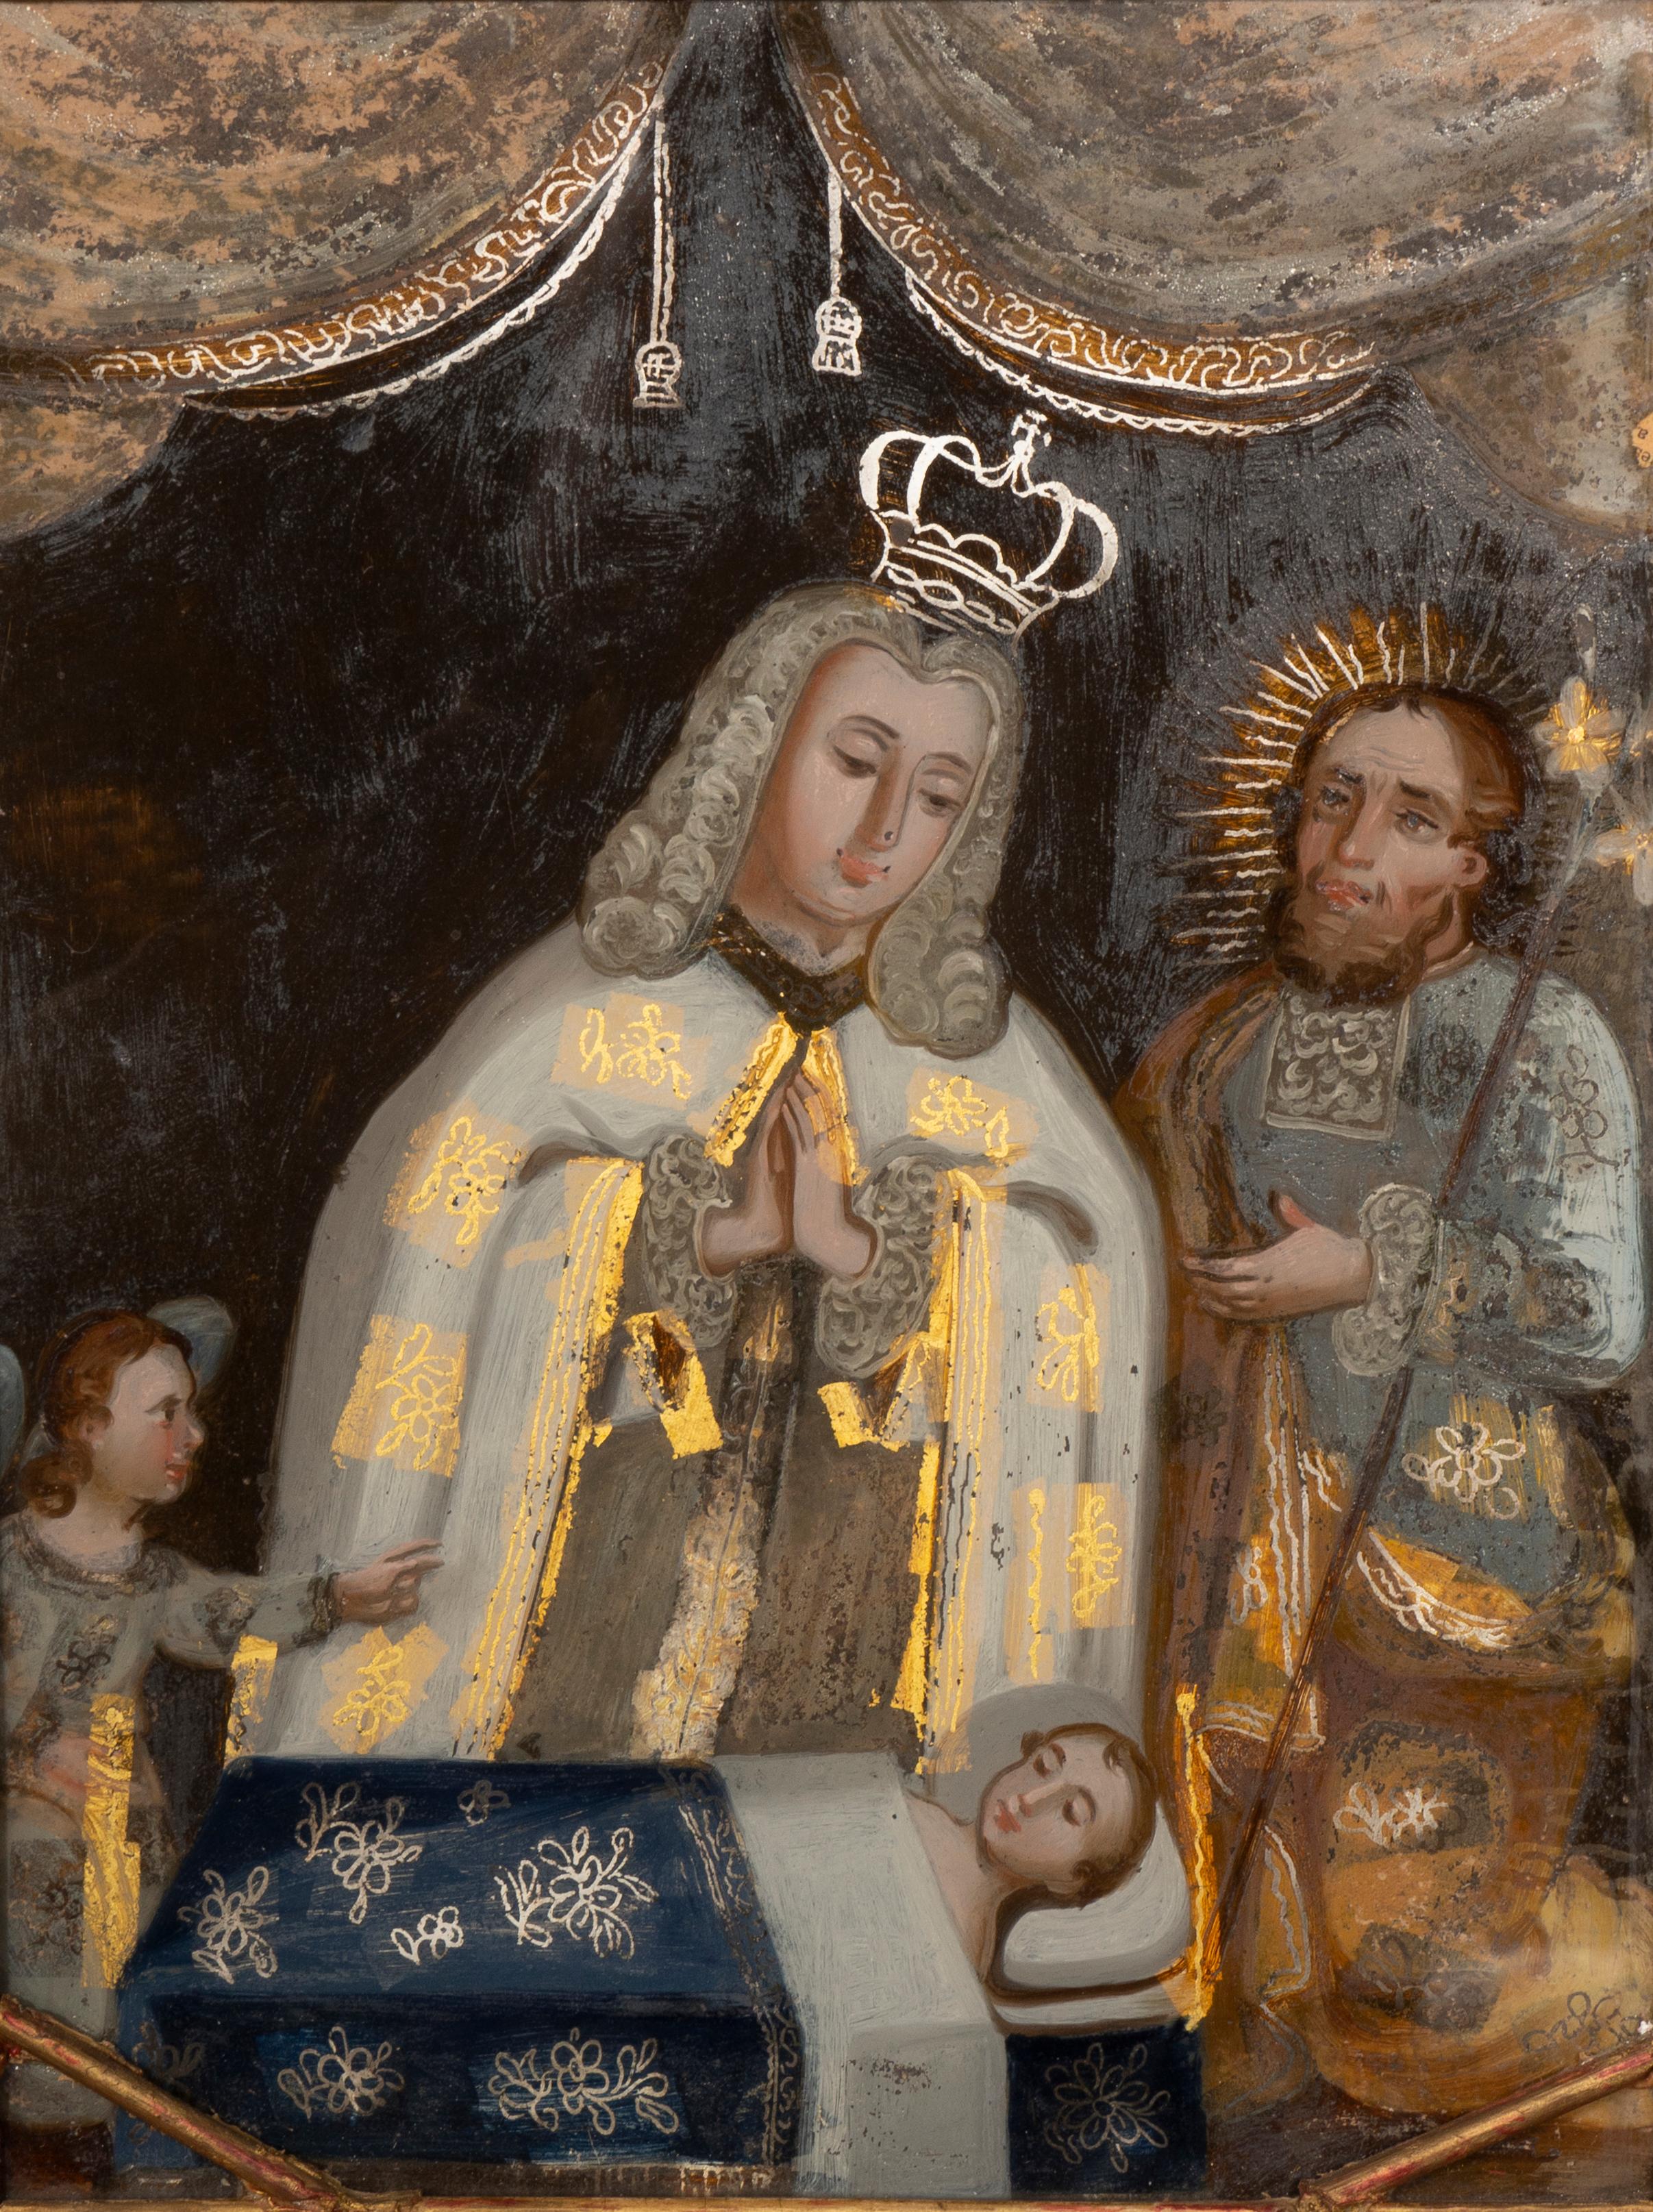 Dans un cadre en bois doré, scène d'un roi aux mains jointes sur un enfant alité avec le Christ à ses côtés.